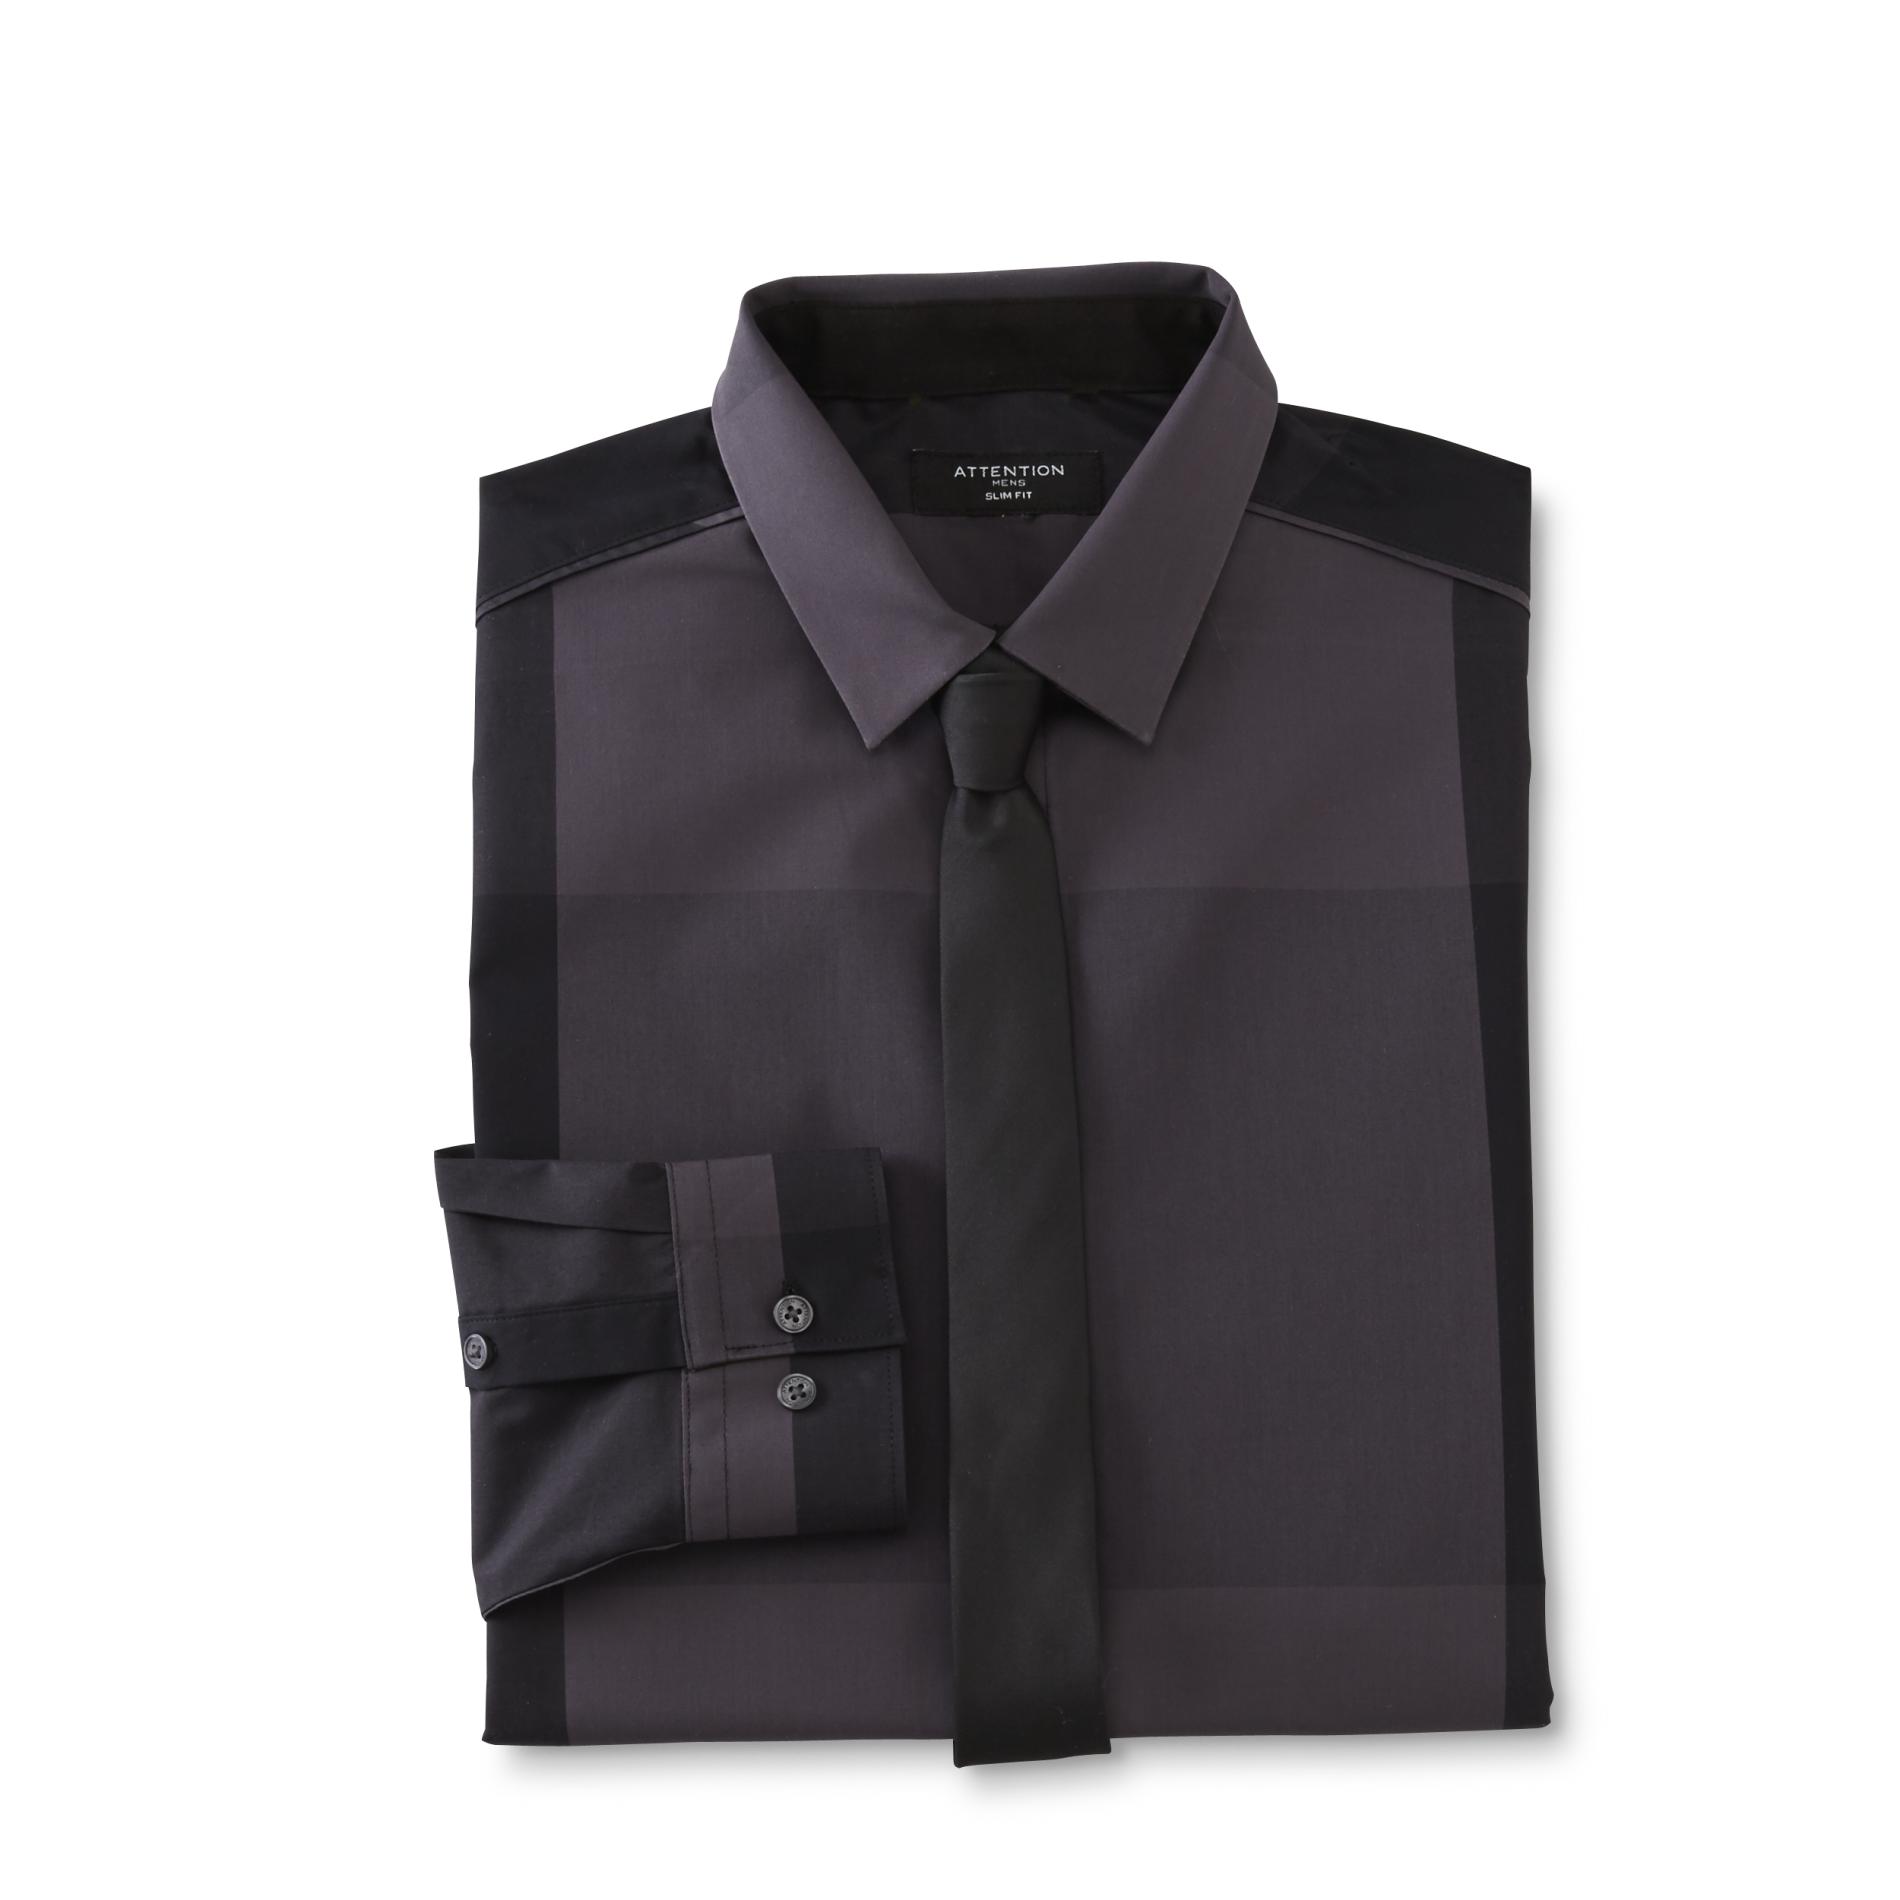 Attention Men's Slim Fit Shirt & Necktie - Checkered